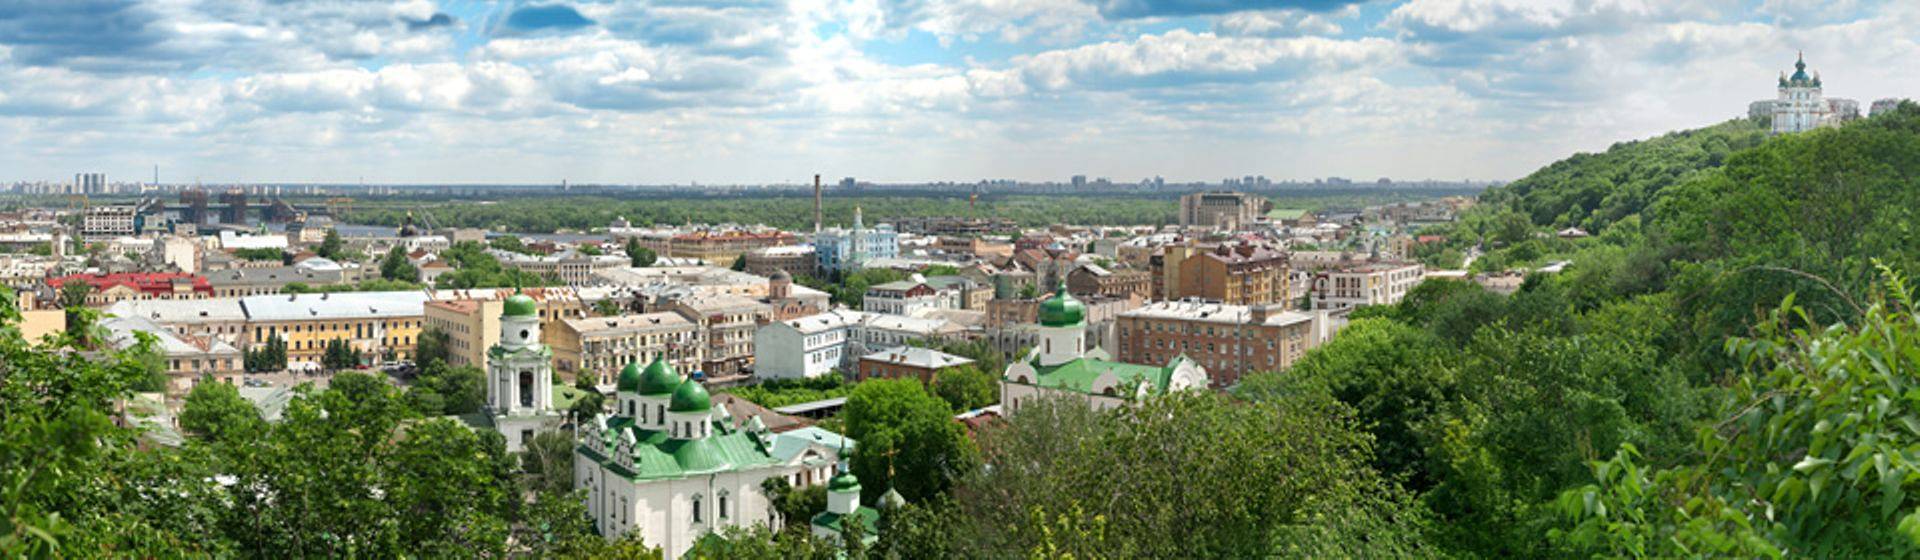 Holidays to Kiev Image